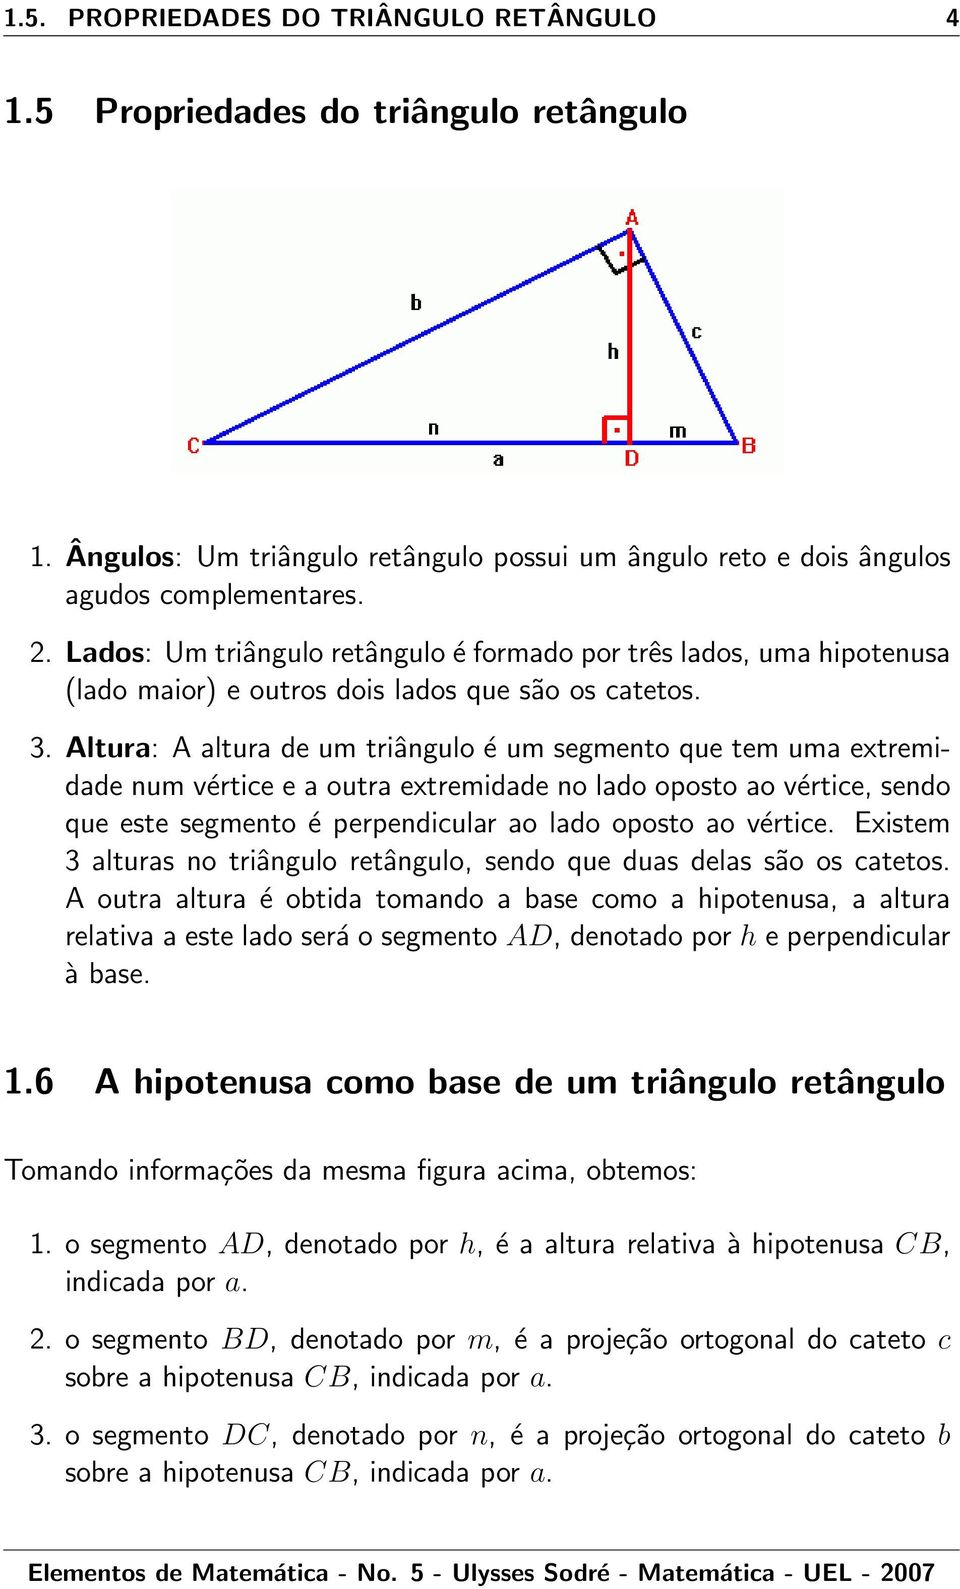 Altur: A ltur de um triângulo é um segmento que tem um extremidde num vértice e outr extremidde no ldo oposto o vértice, sendo que este segmento é perpendiculr o ldo oposto o vértice.